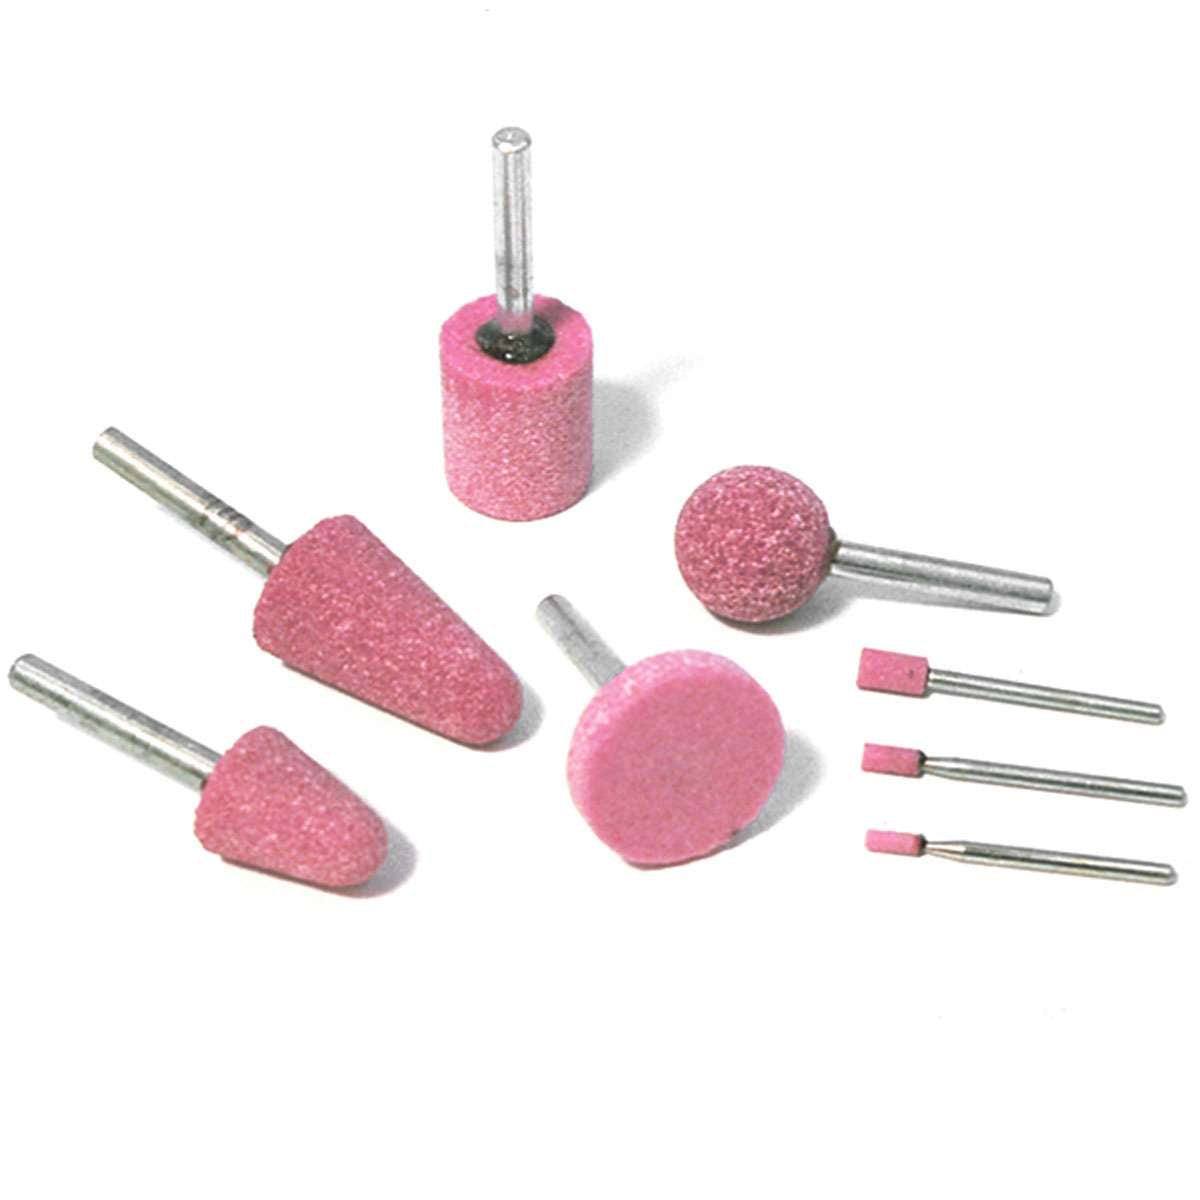 Mole cilindriche vetrificate rosa per sgrossare e smerigliare D.10x10x(3-4) 25pz